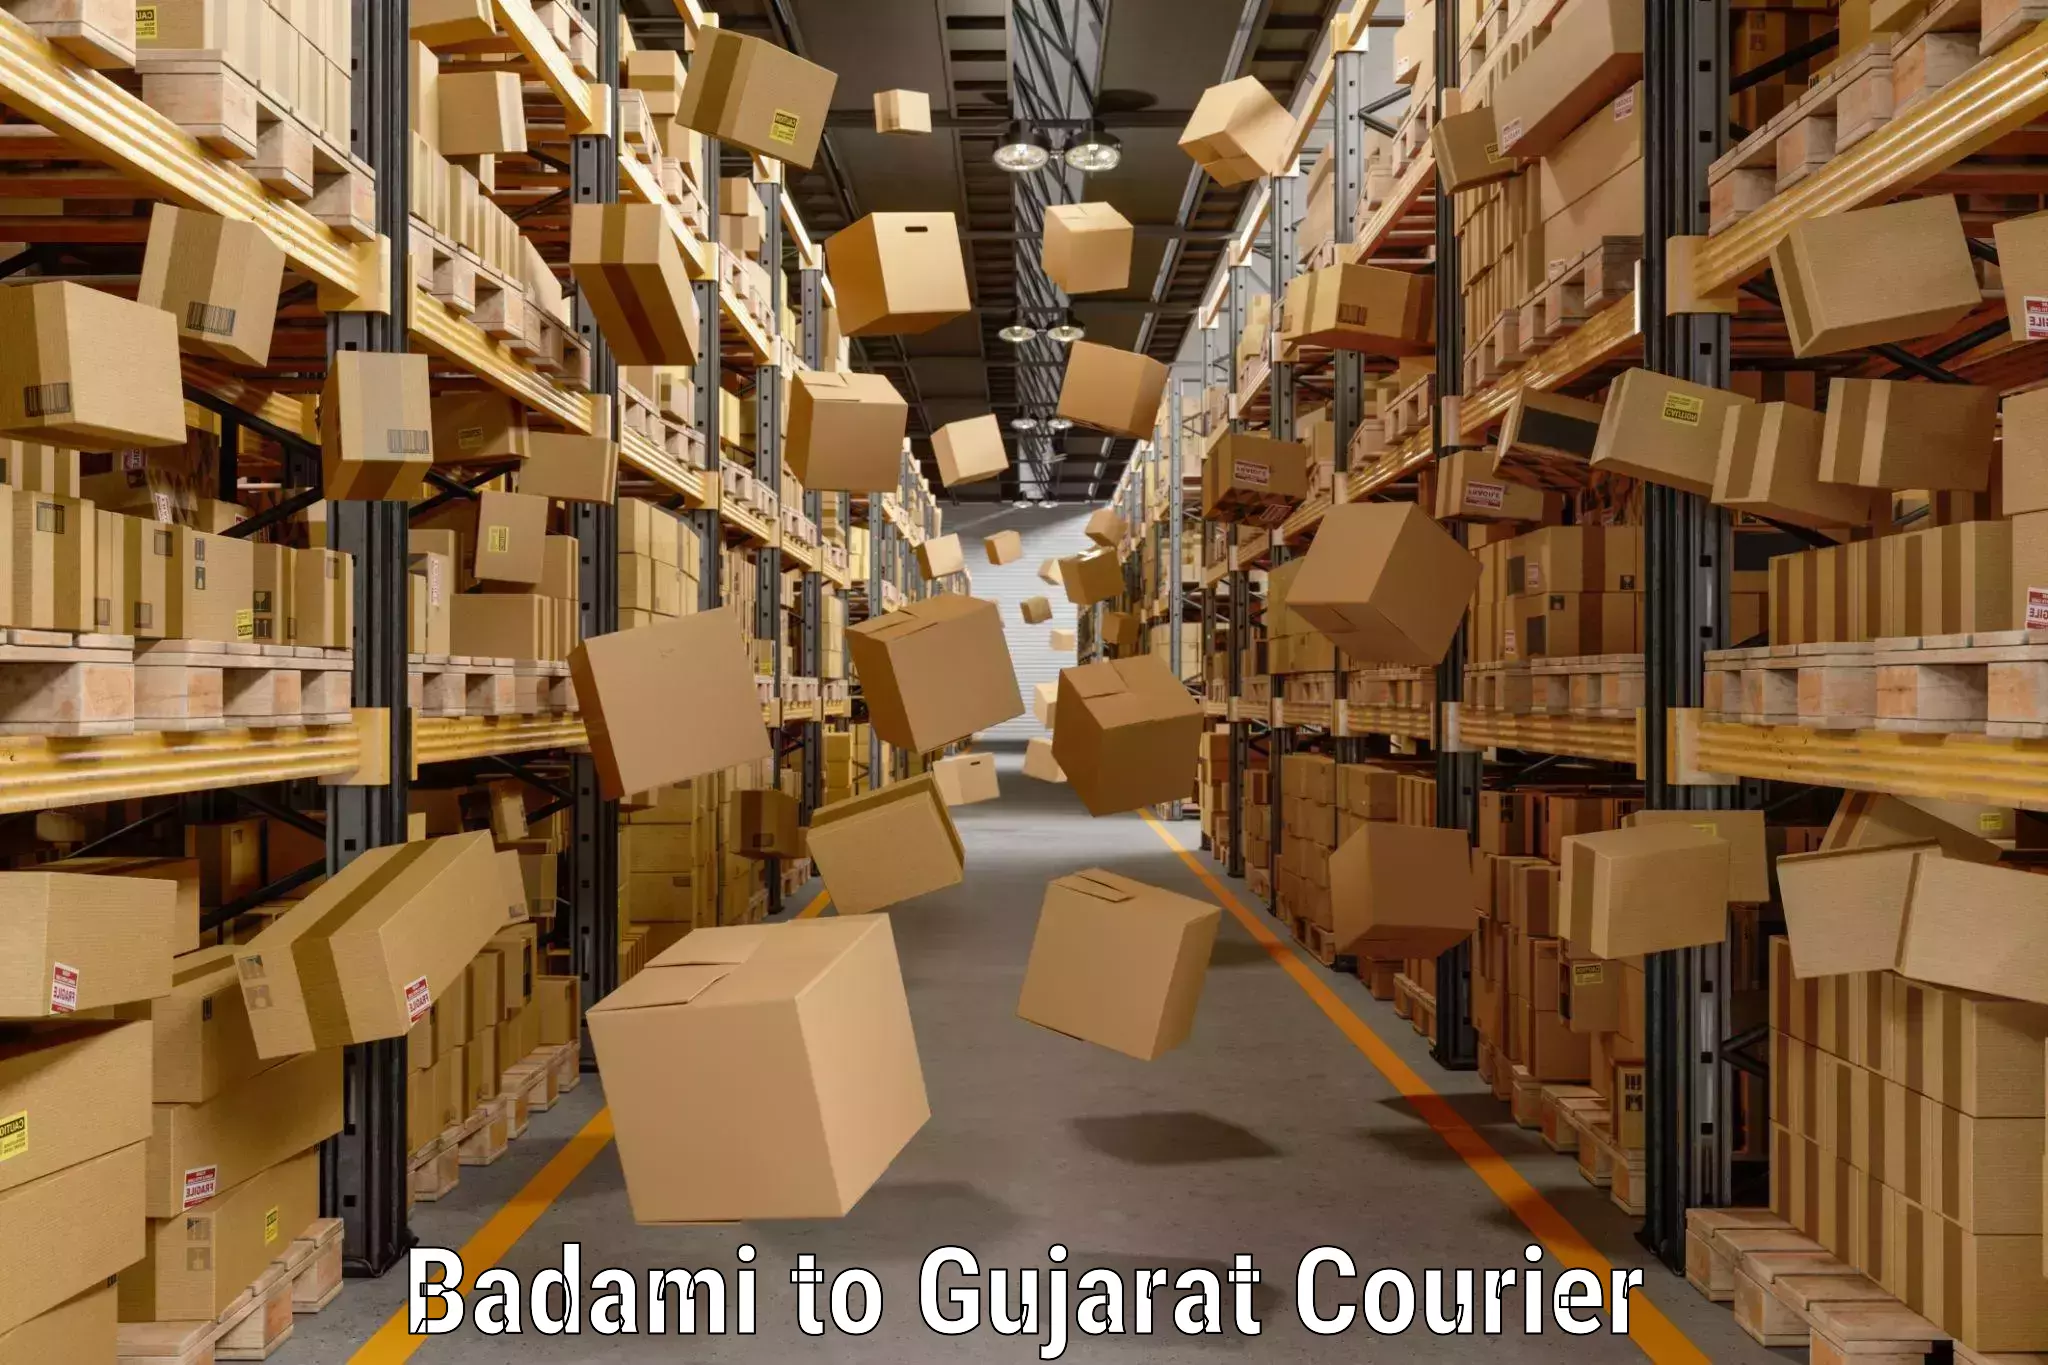 Baggage transport network Badami to Gujarat